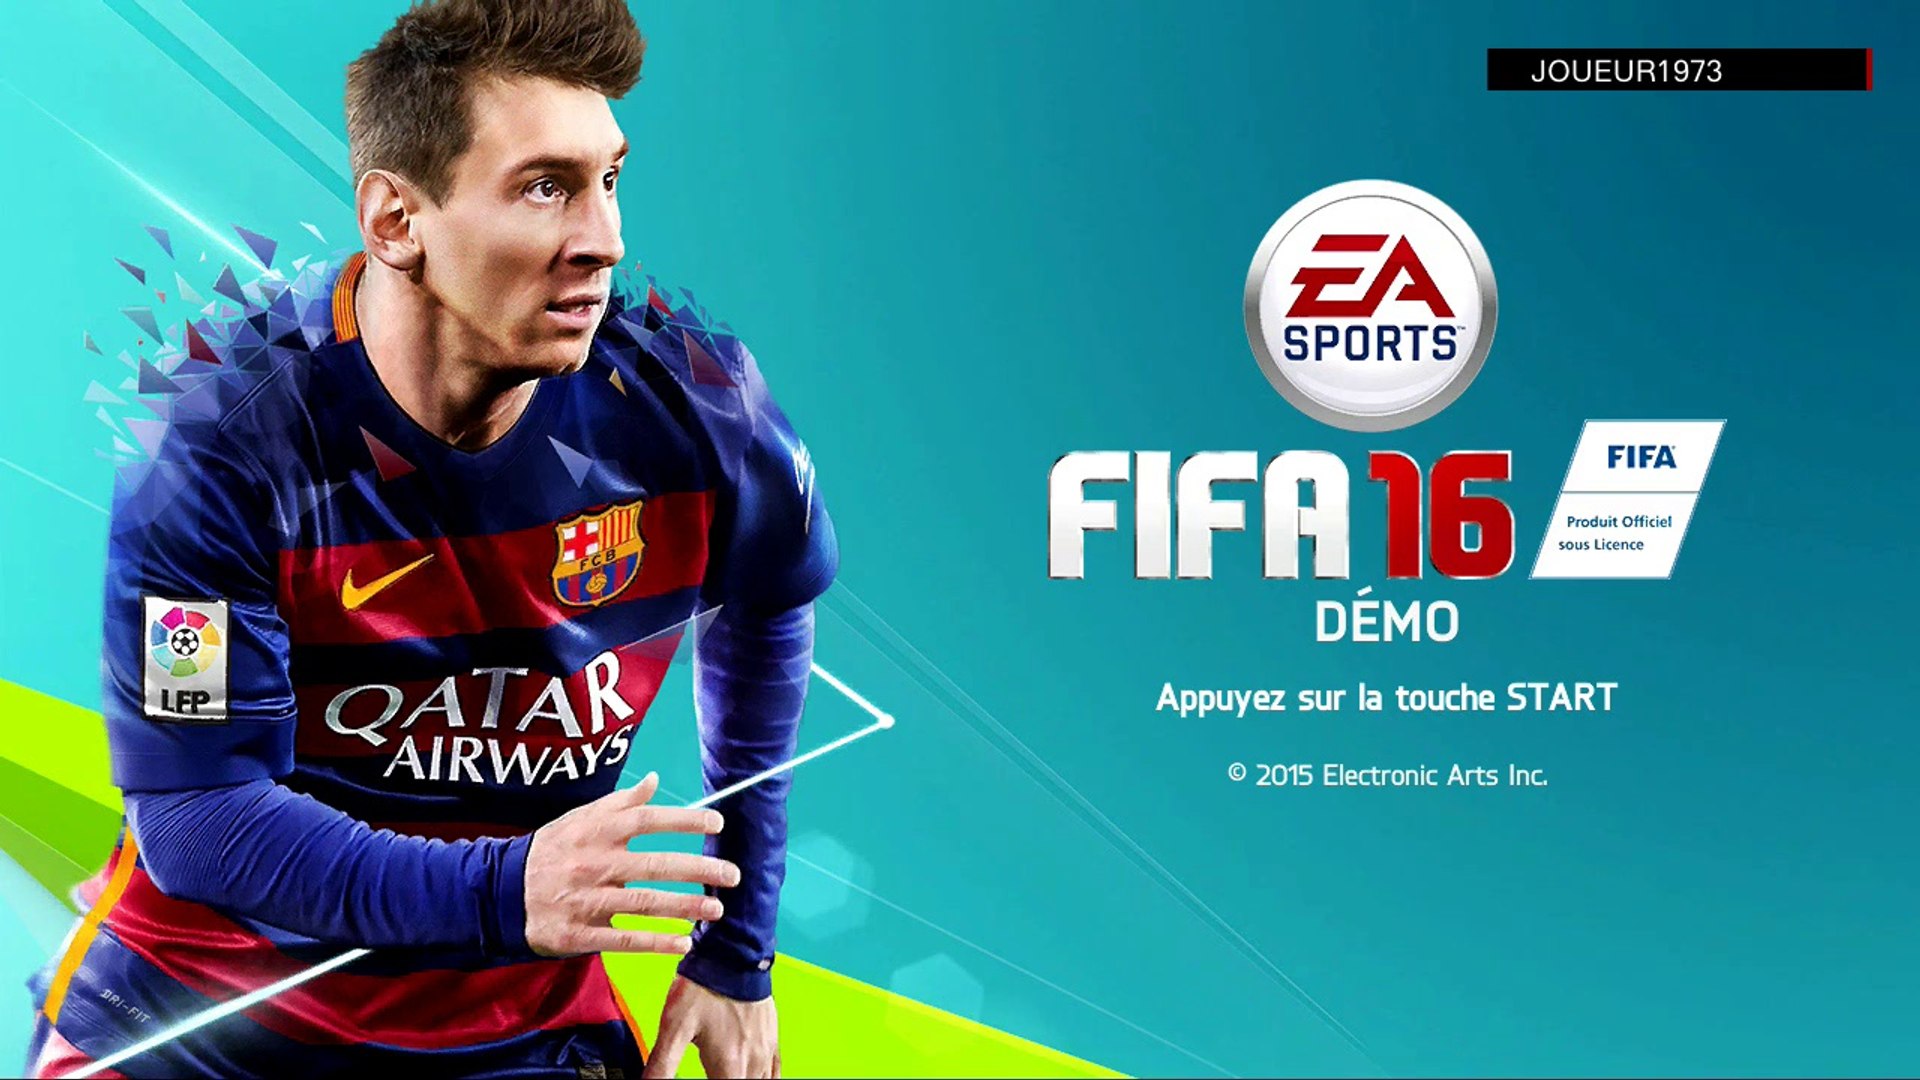 Fifa 16 mod. FIFA 16 Xbox 360. FIFA 16 обложка. ФИФА 16 на Xbox 360. Месси на обложке ФИФА.